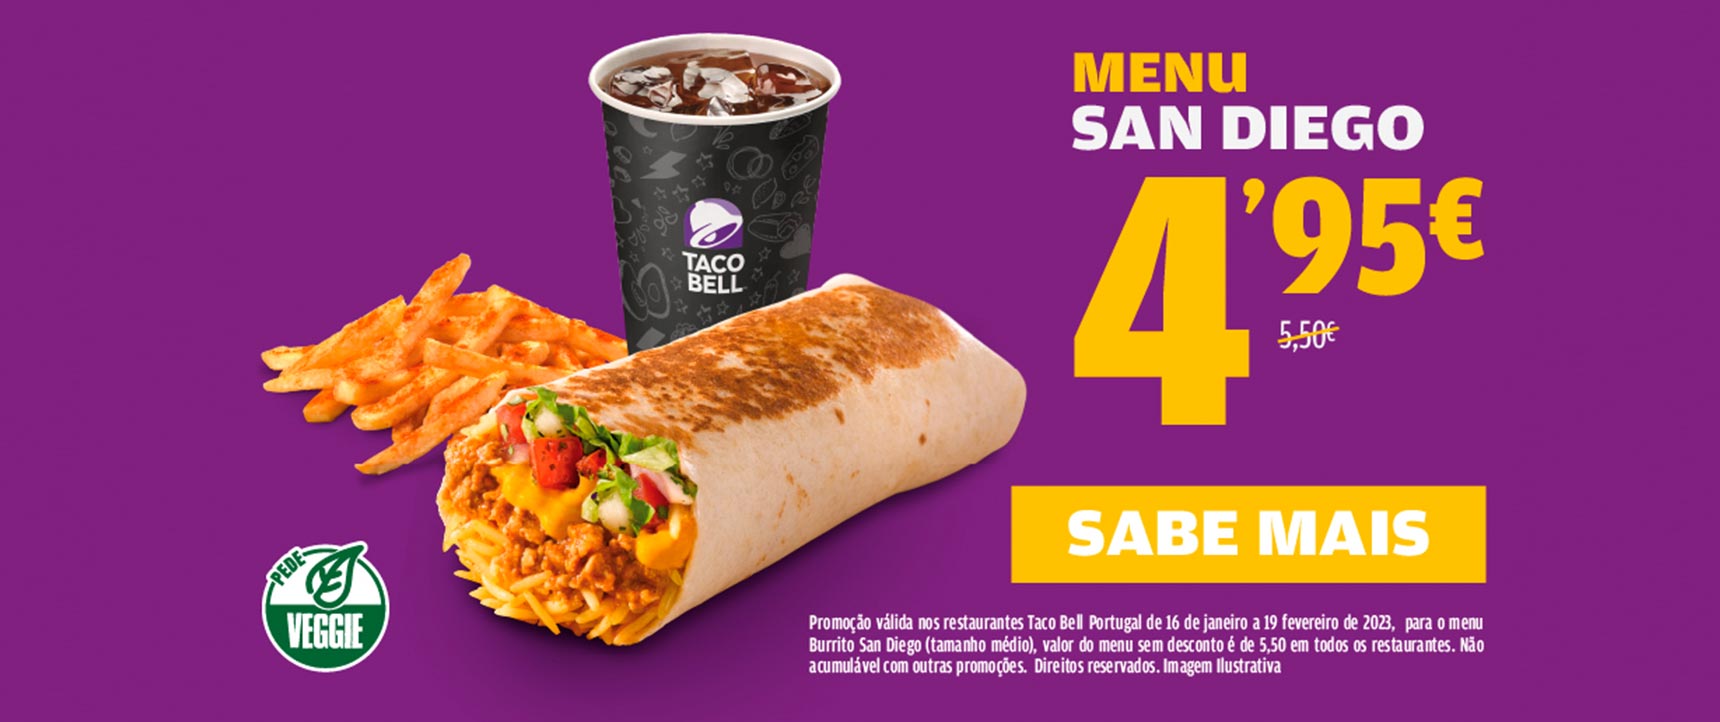 Taco Bell promoção menu san diego